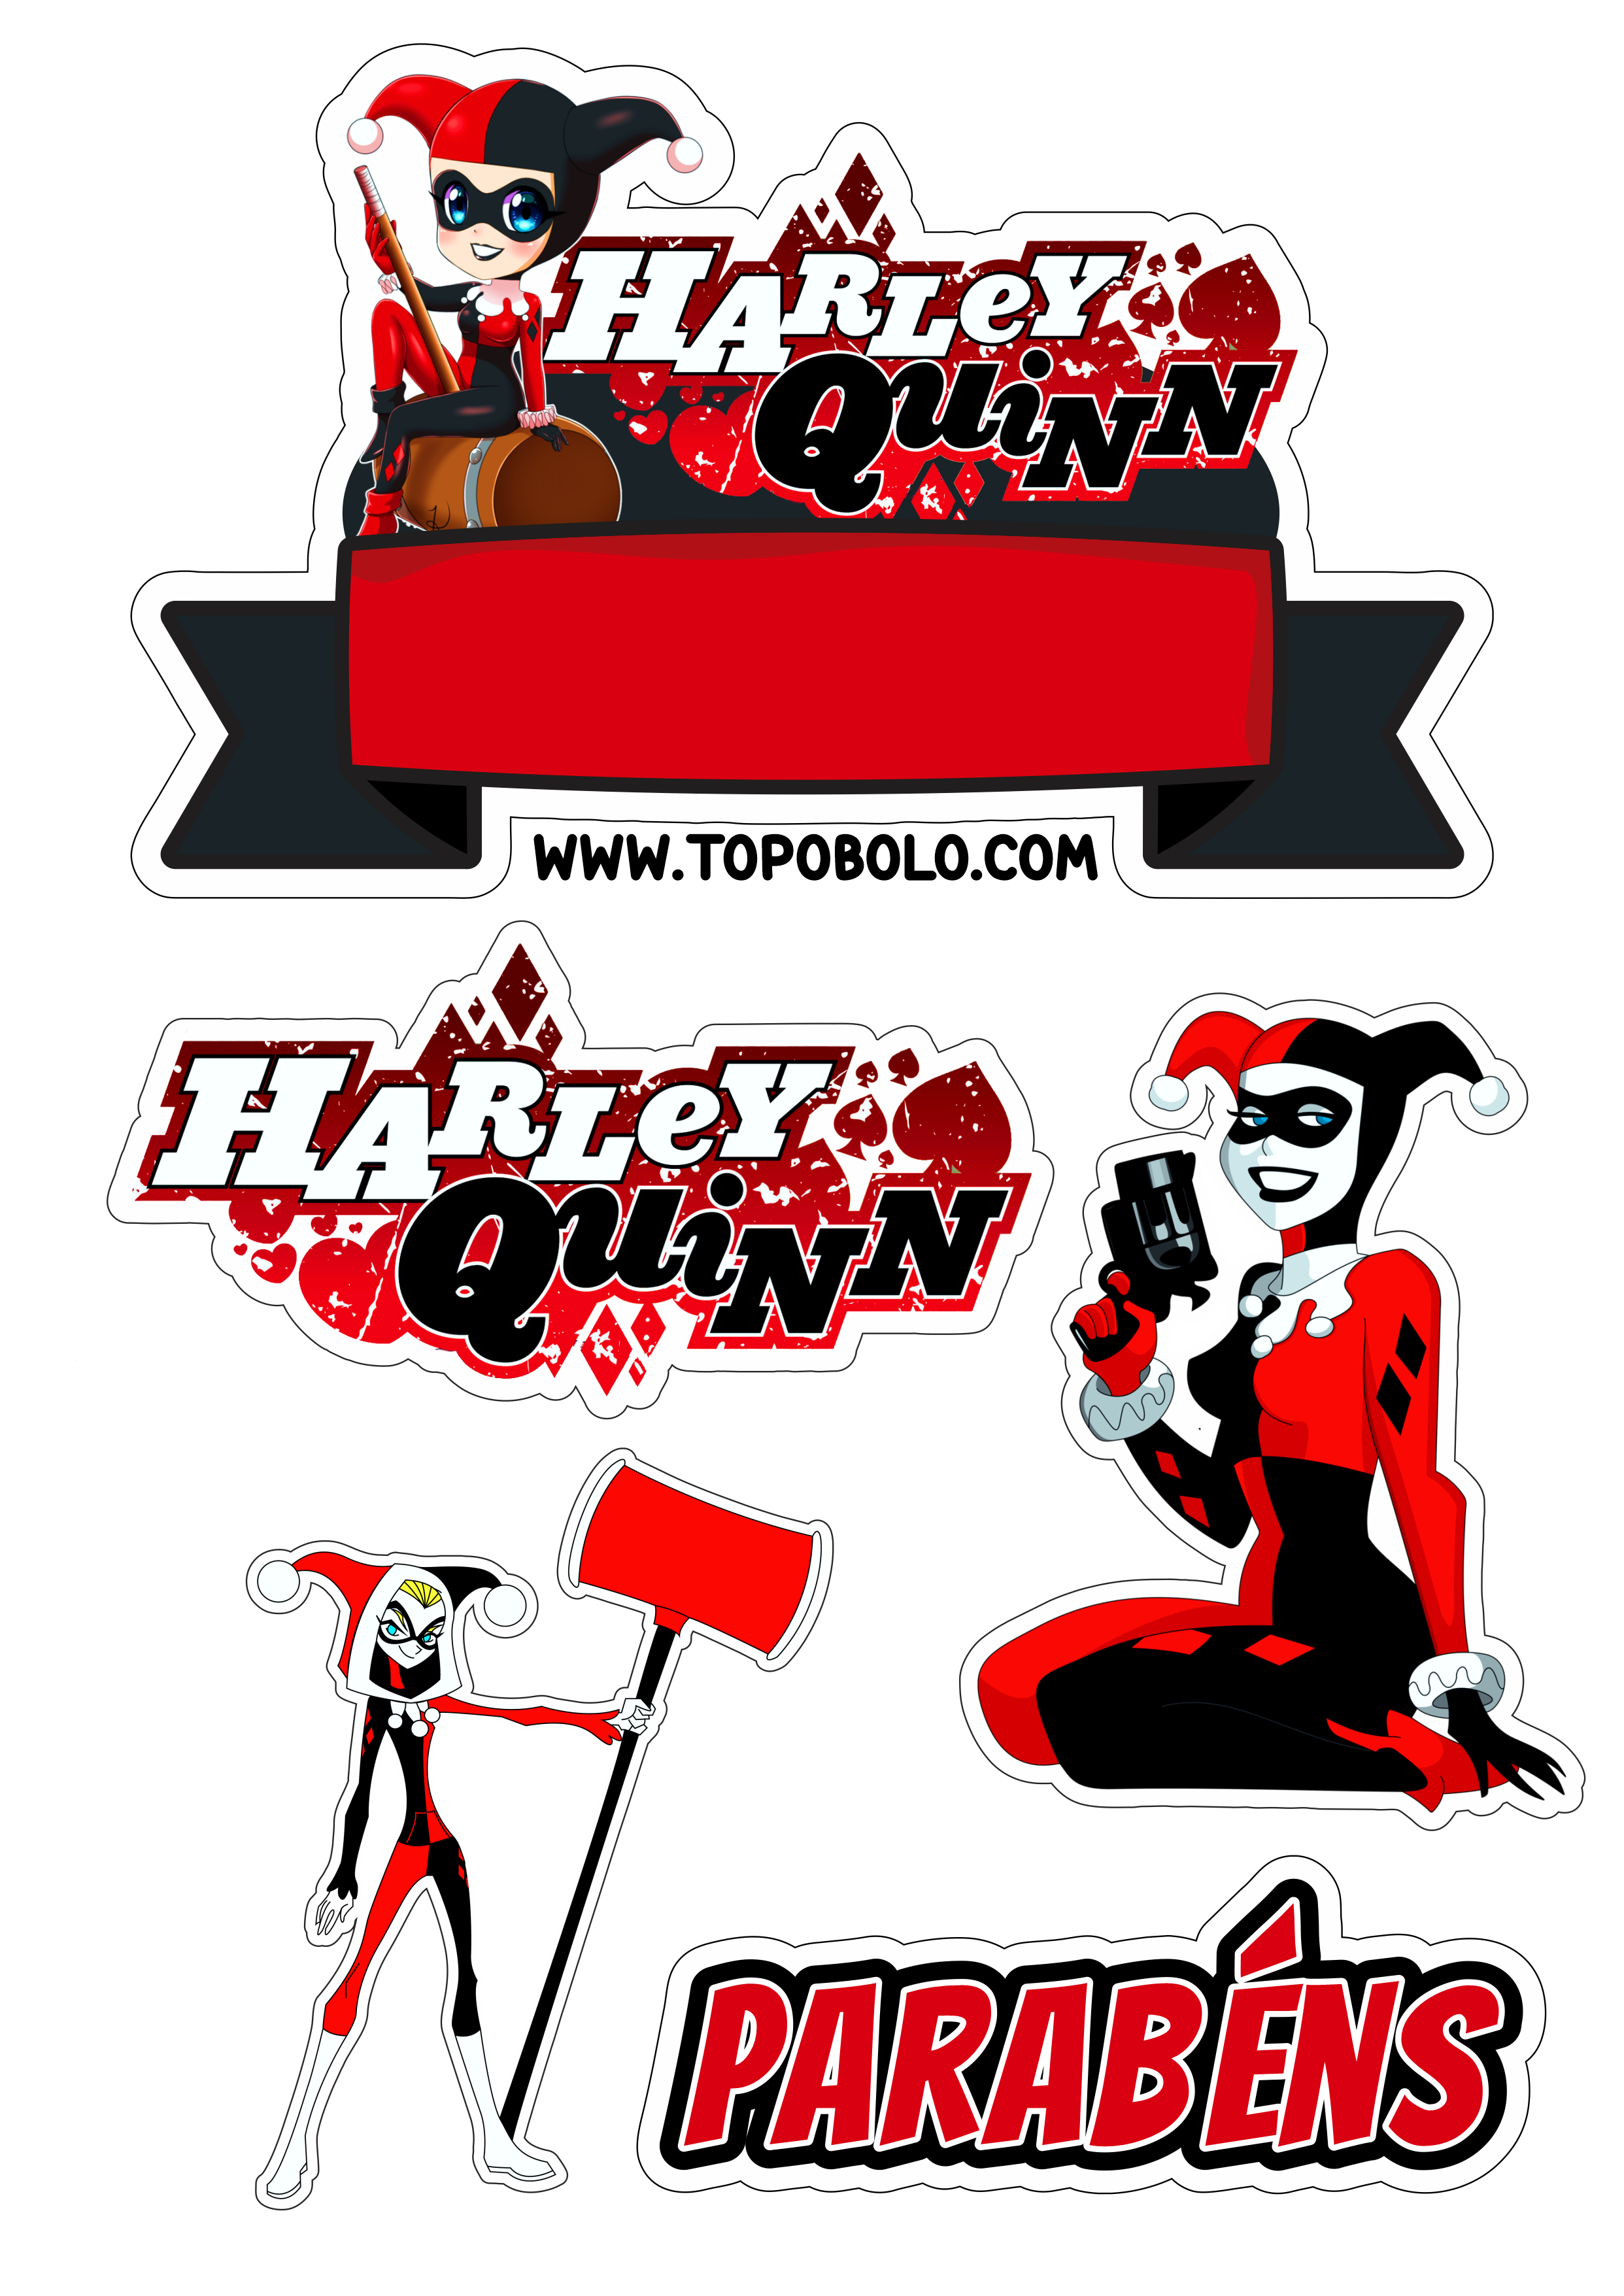 Arlequina decoração de aniversário topo de bolo para imprimir Harley Quinn dc comics artpoin png image personalizados renda extra